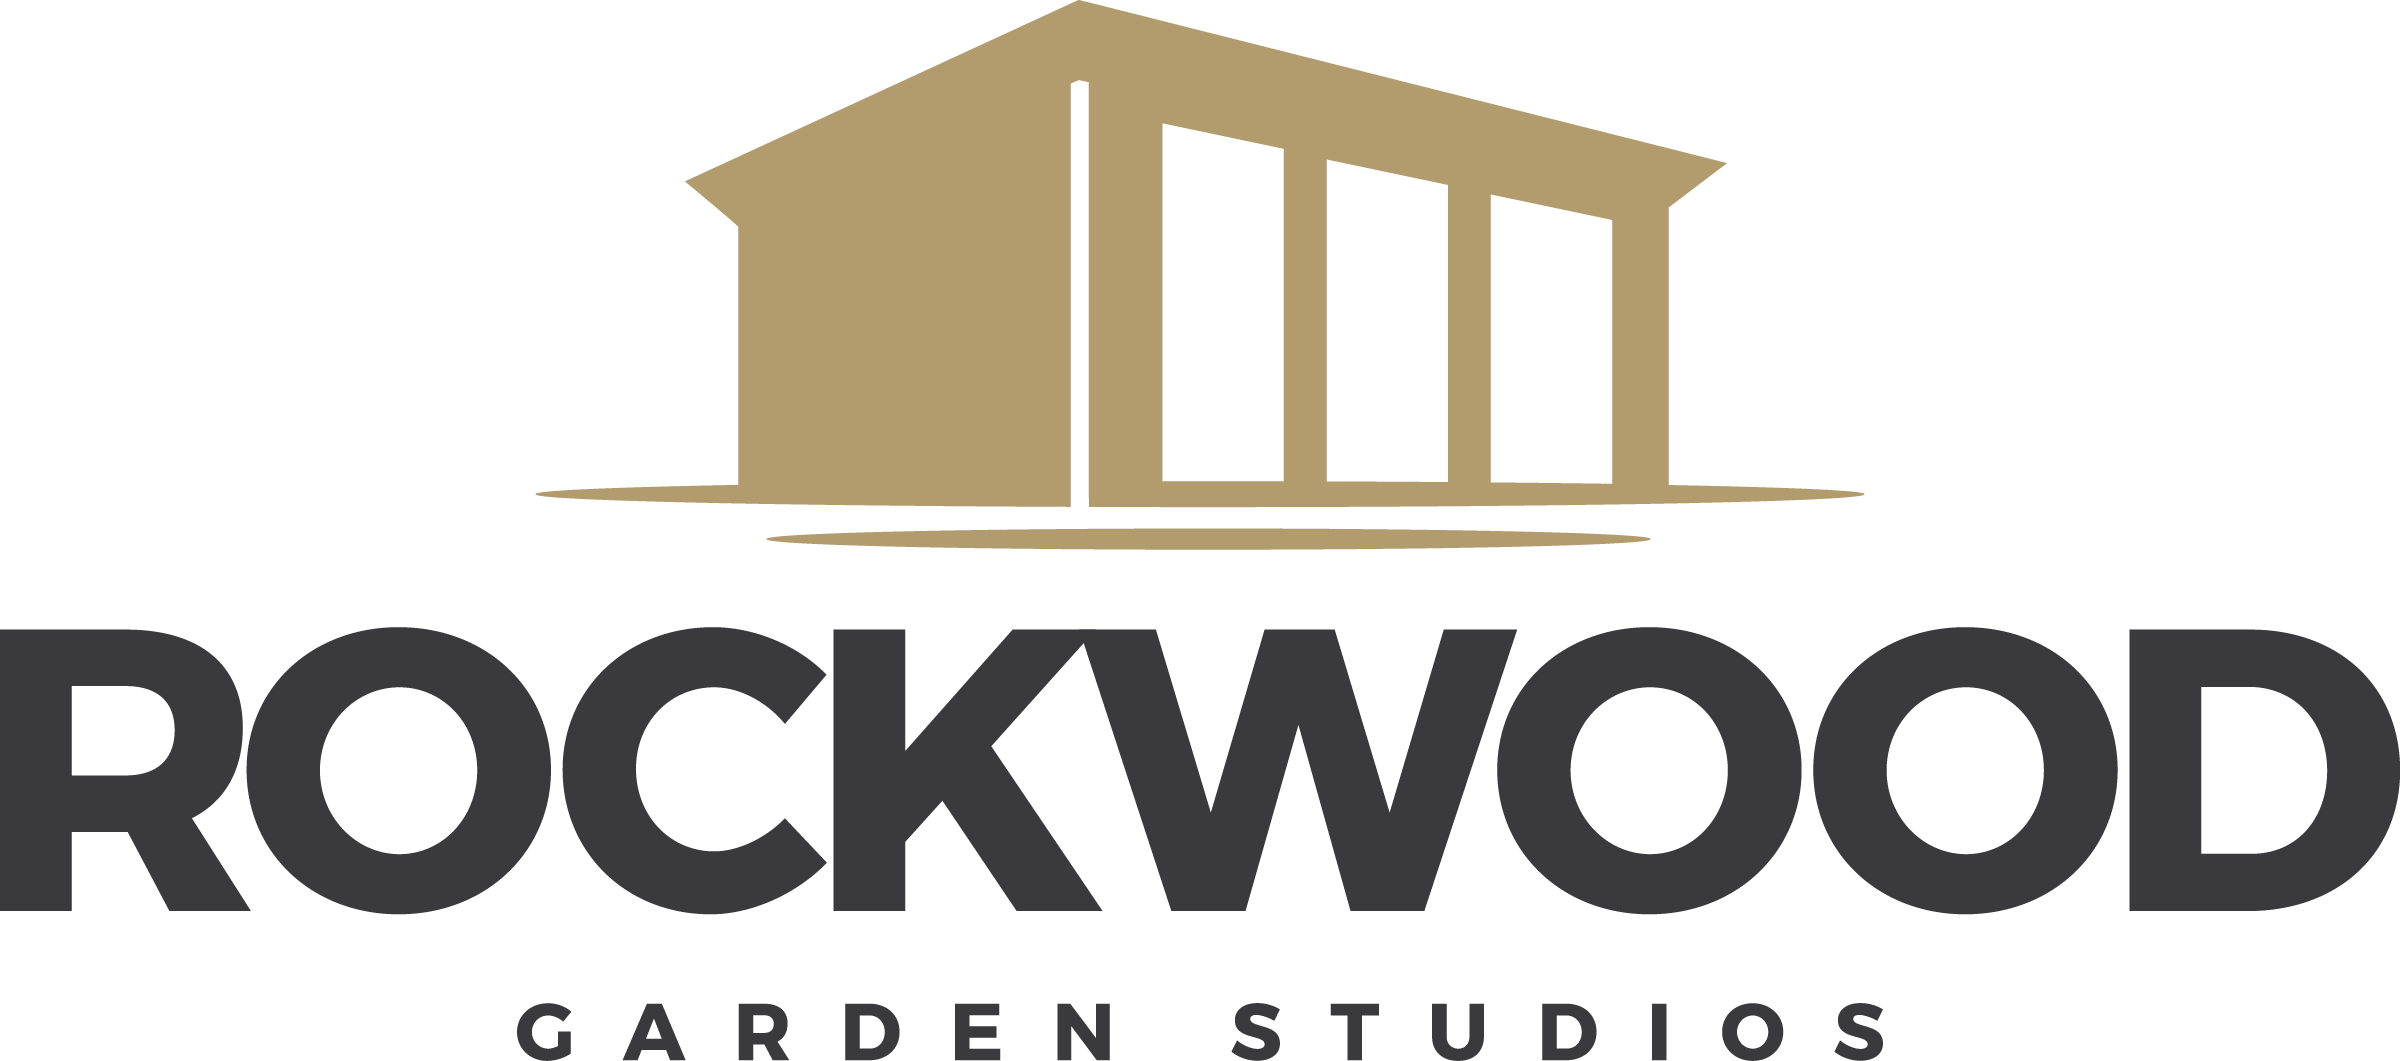 Rockwood Garden Studios Ltd